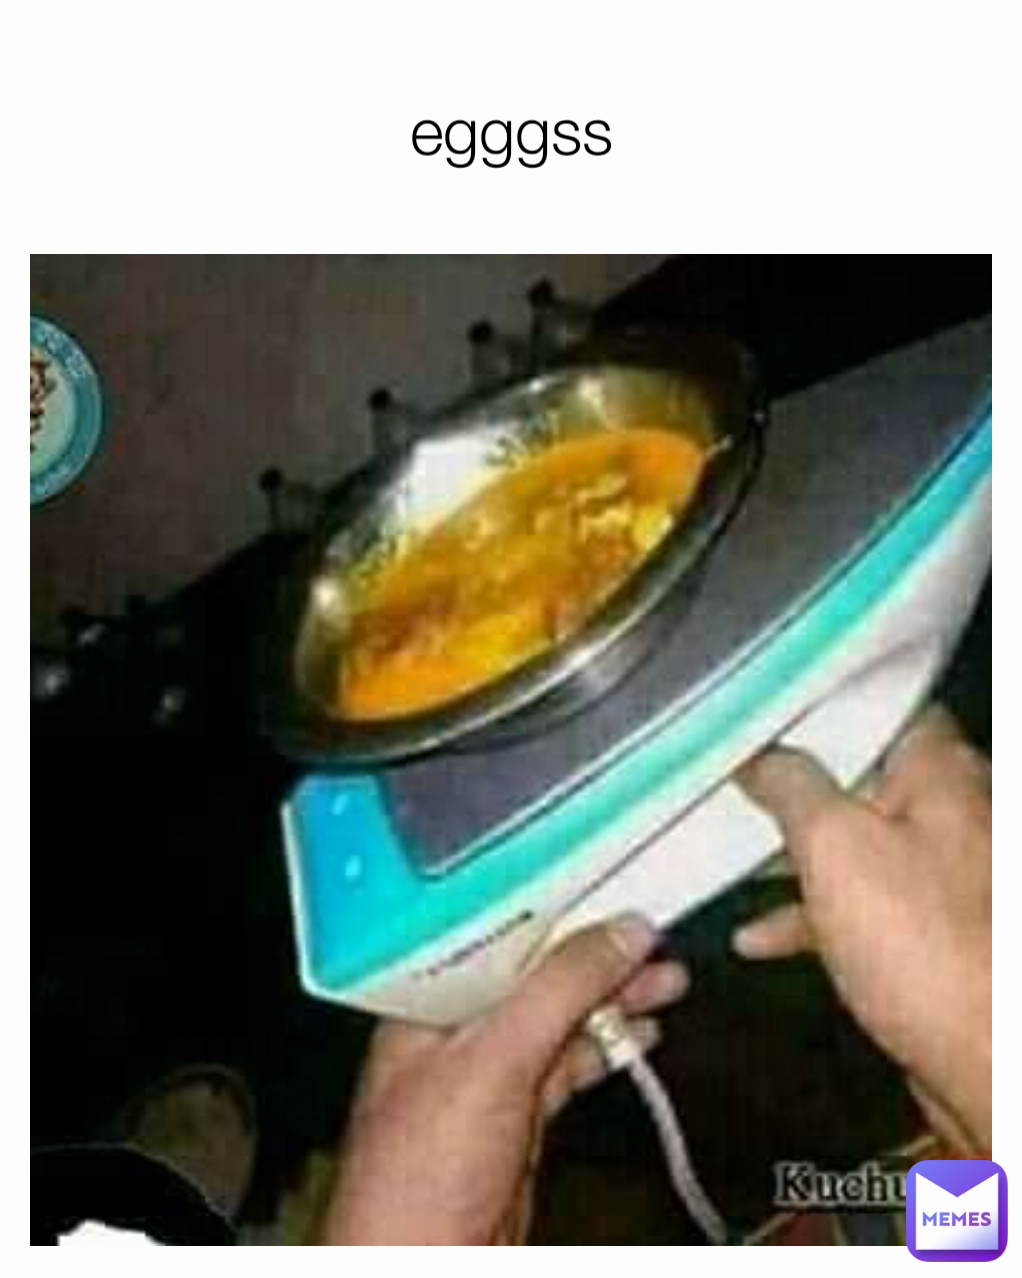 egggss